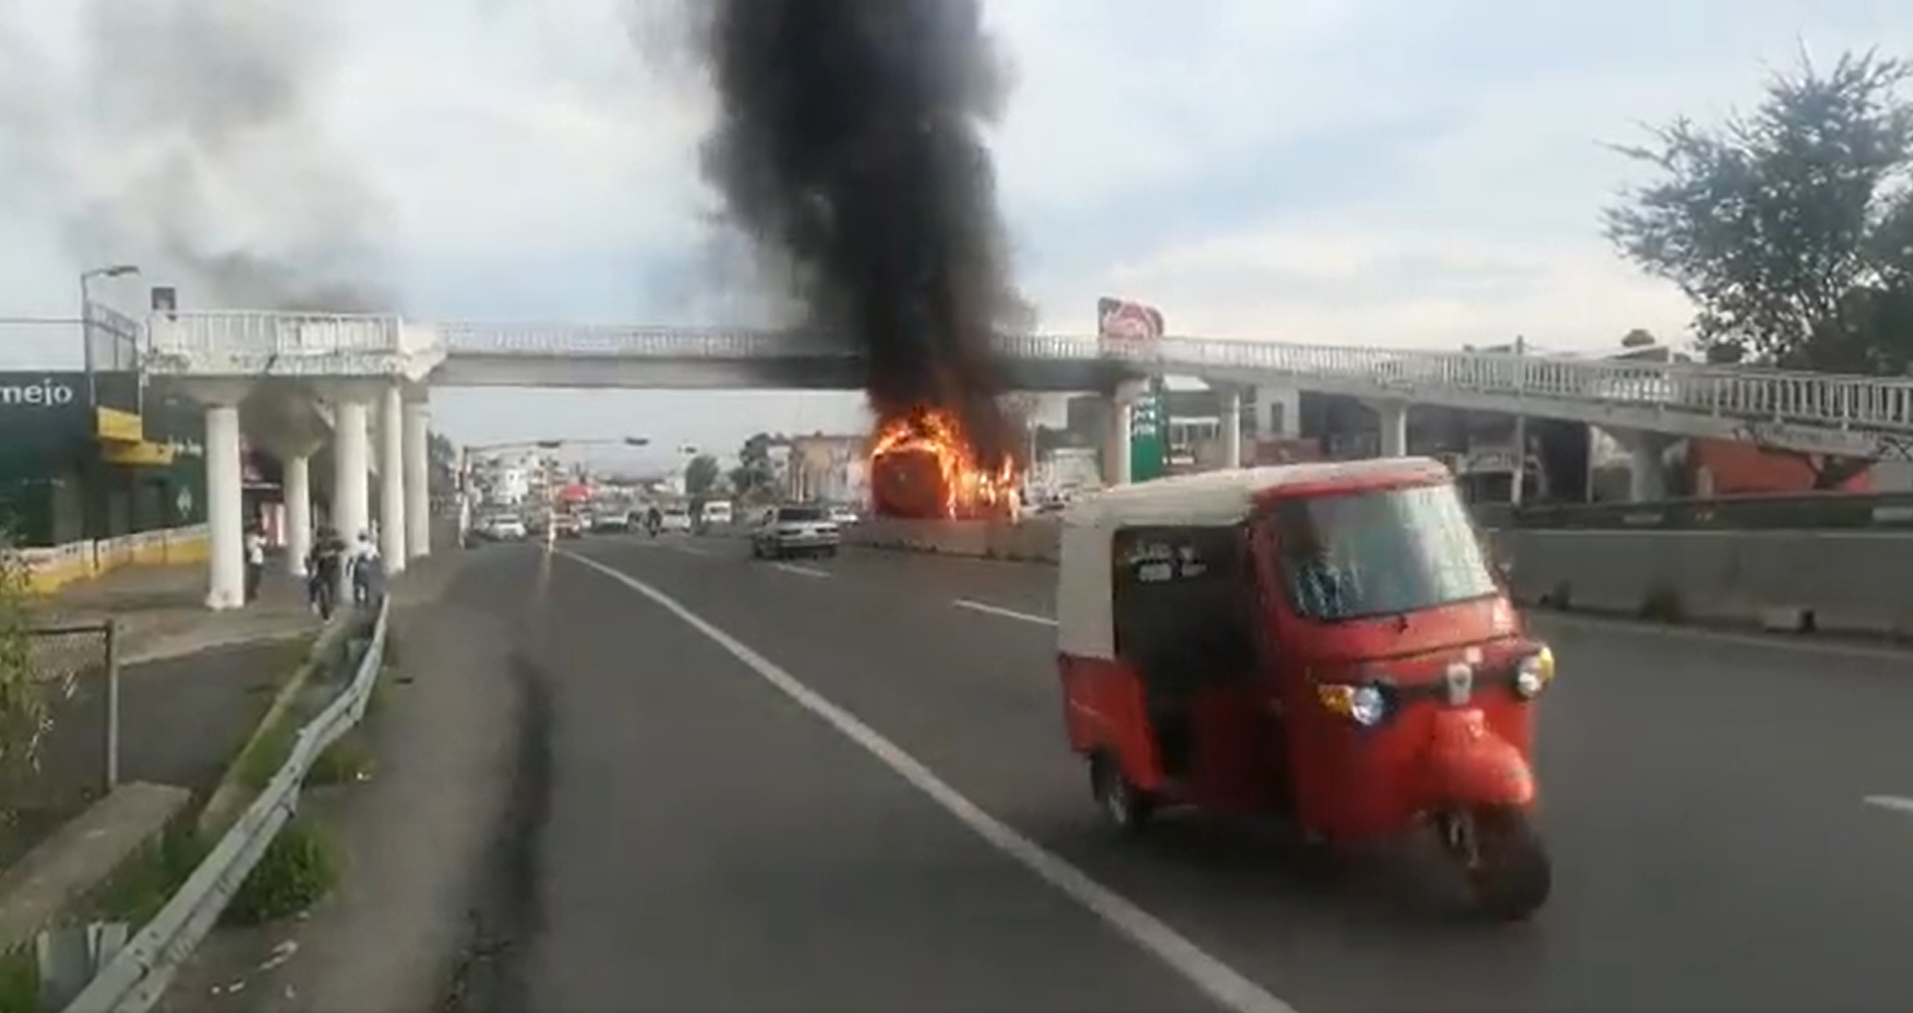 Fue en el municipio de Zapopan donde se registraron los primeros incendios de vehículos del transporte público (Foto: captura de pantalla/Twitter)